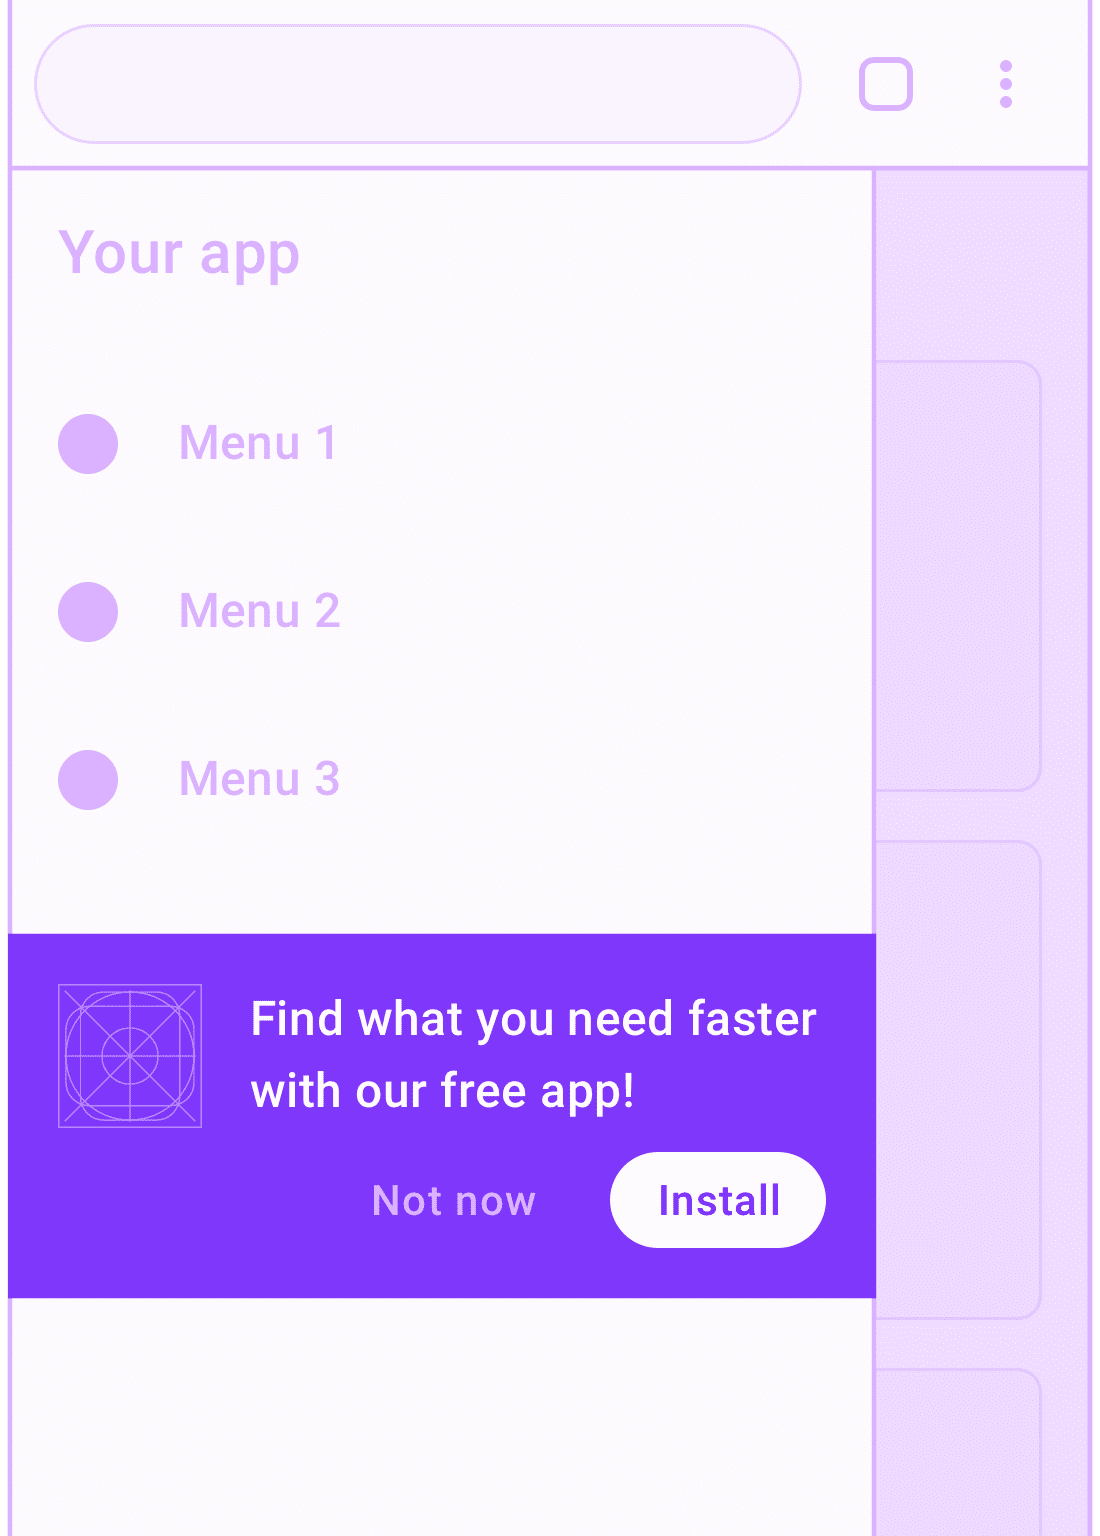 Custom install button in nav menu